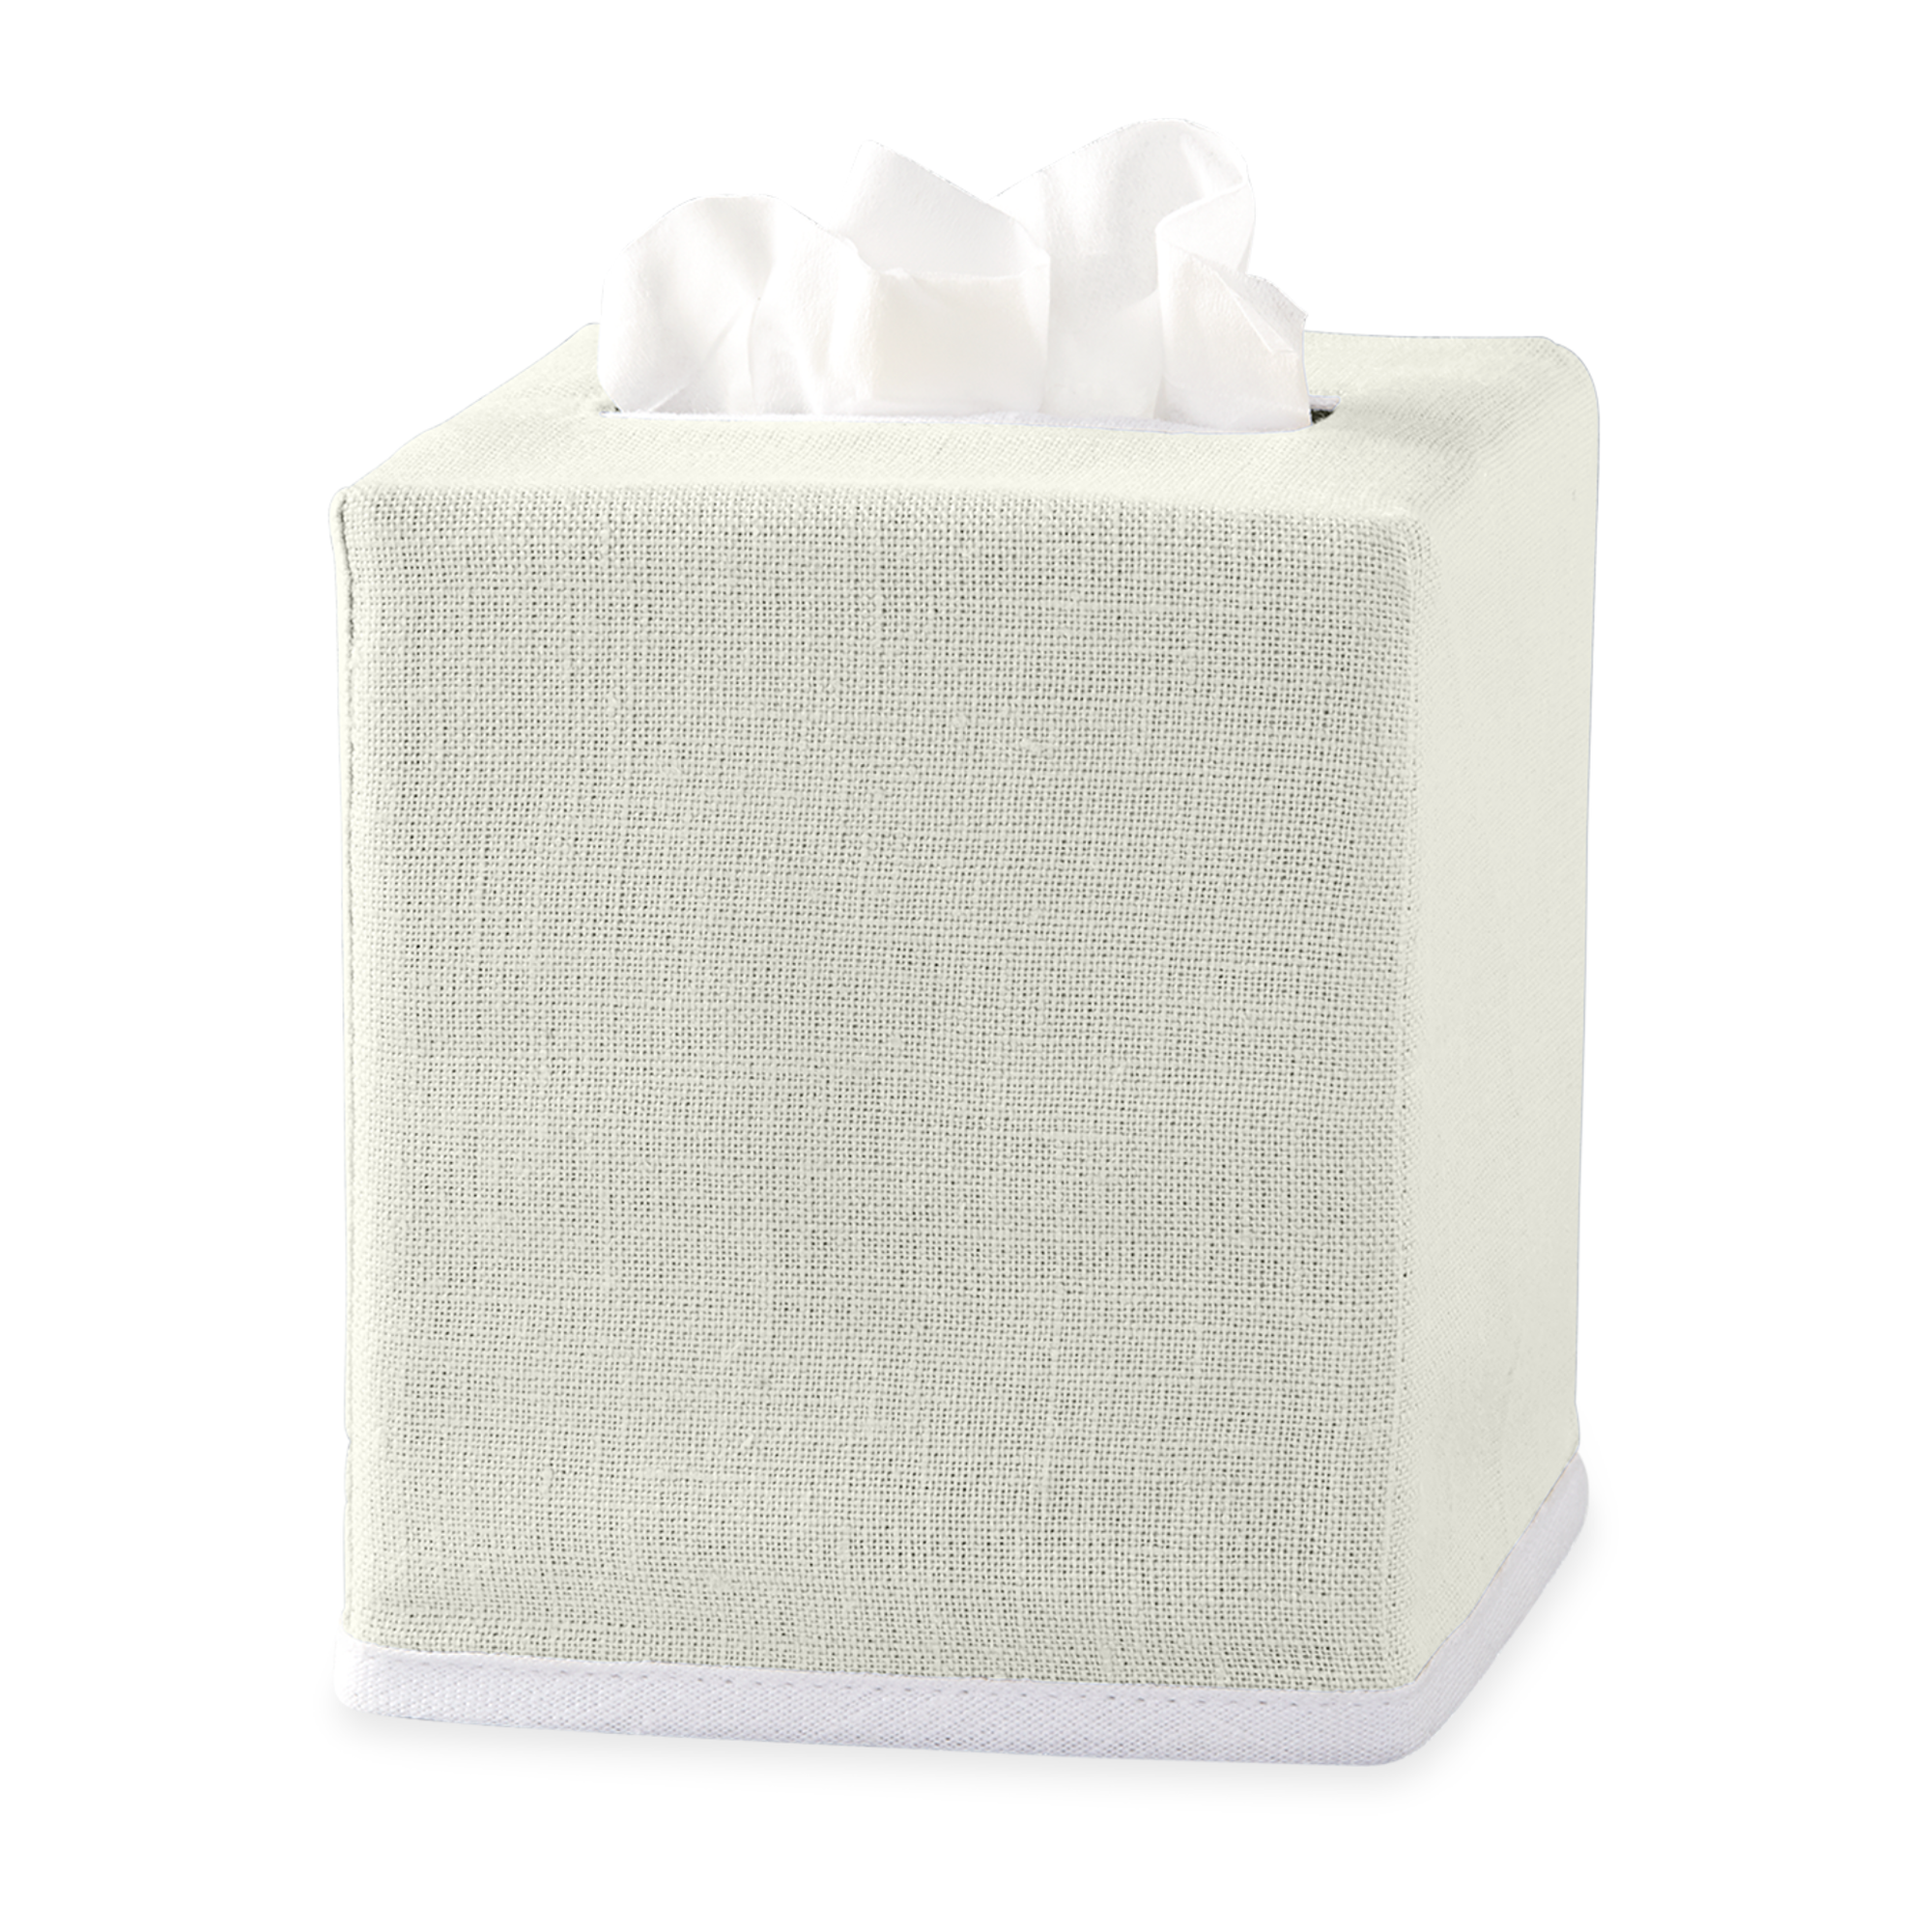 Ivory Matouk Chelsea Linen Tissue Box Cover Against White Background